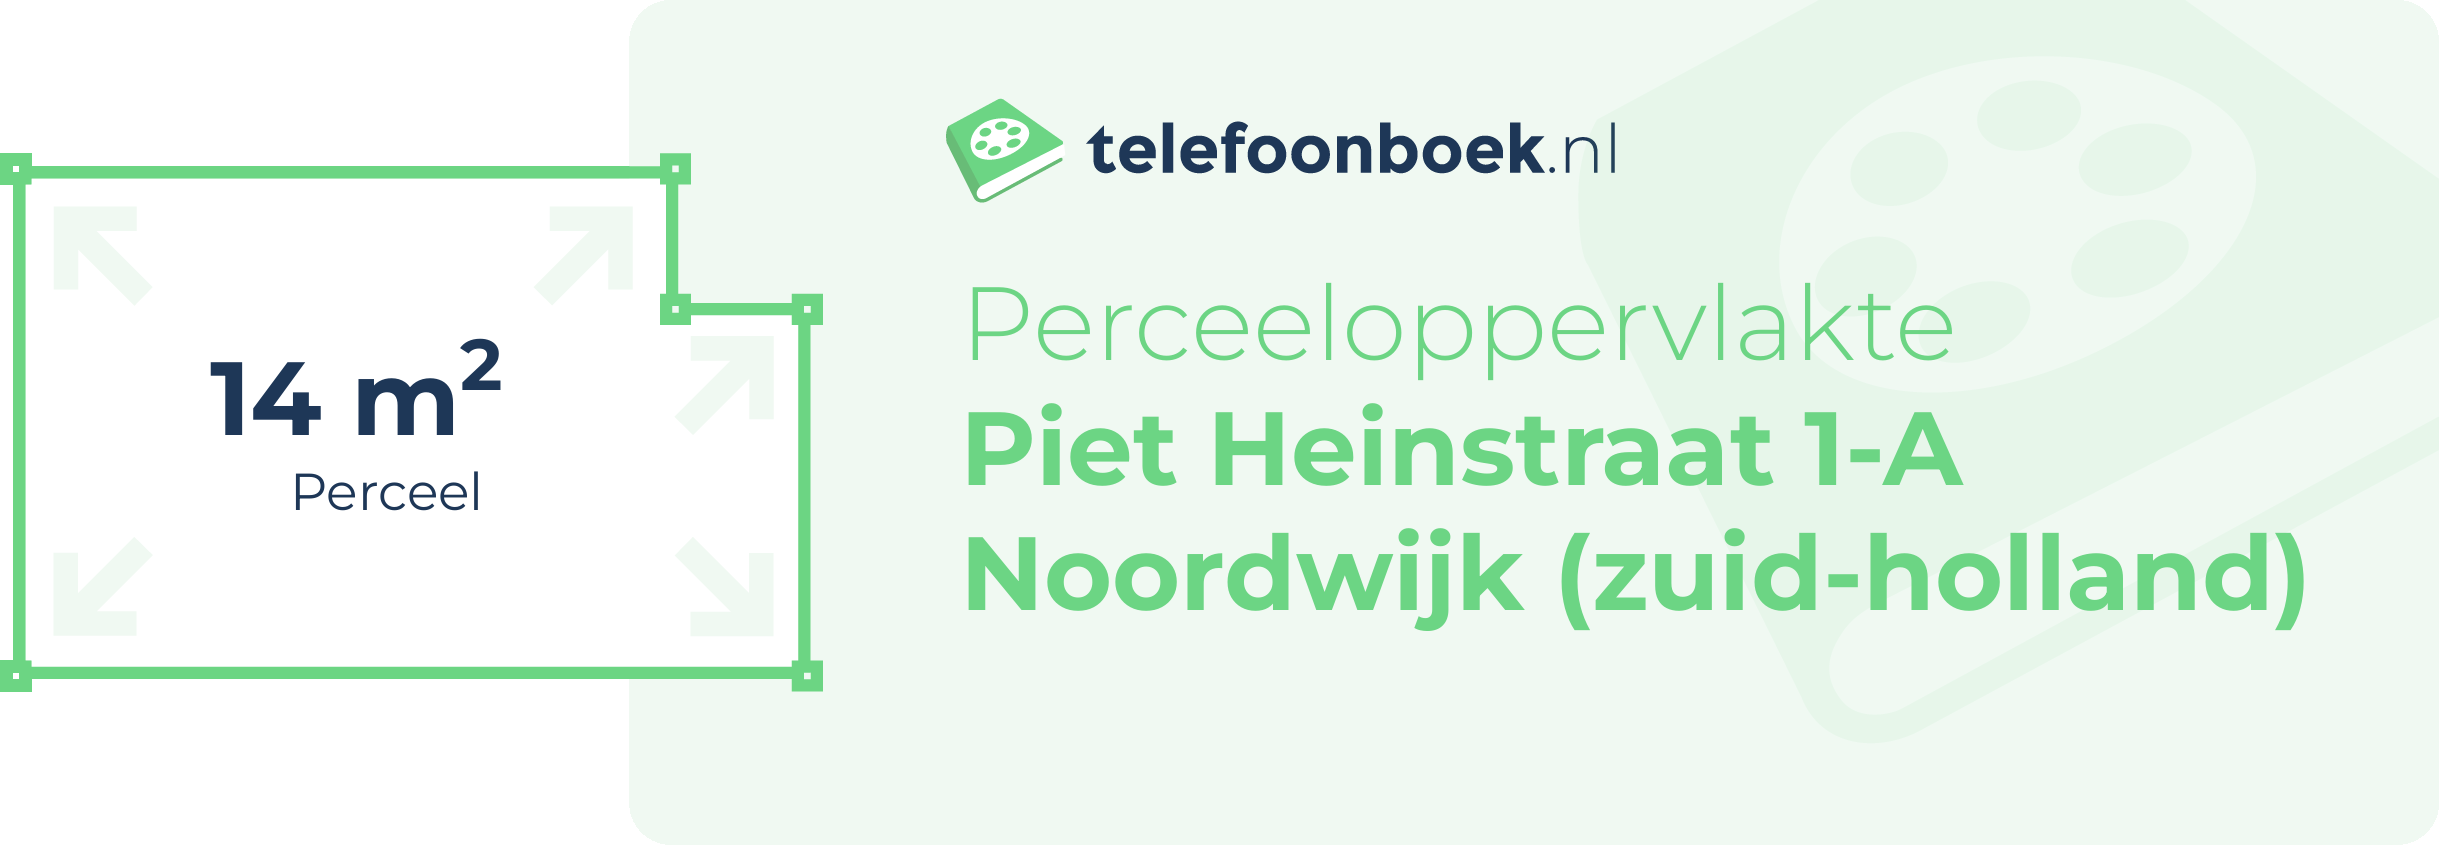 Perceeloppervlakte Piet Heinstraat 1-A Noordwijk (Zuid-Holland)